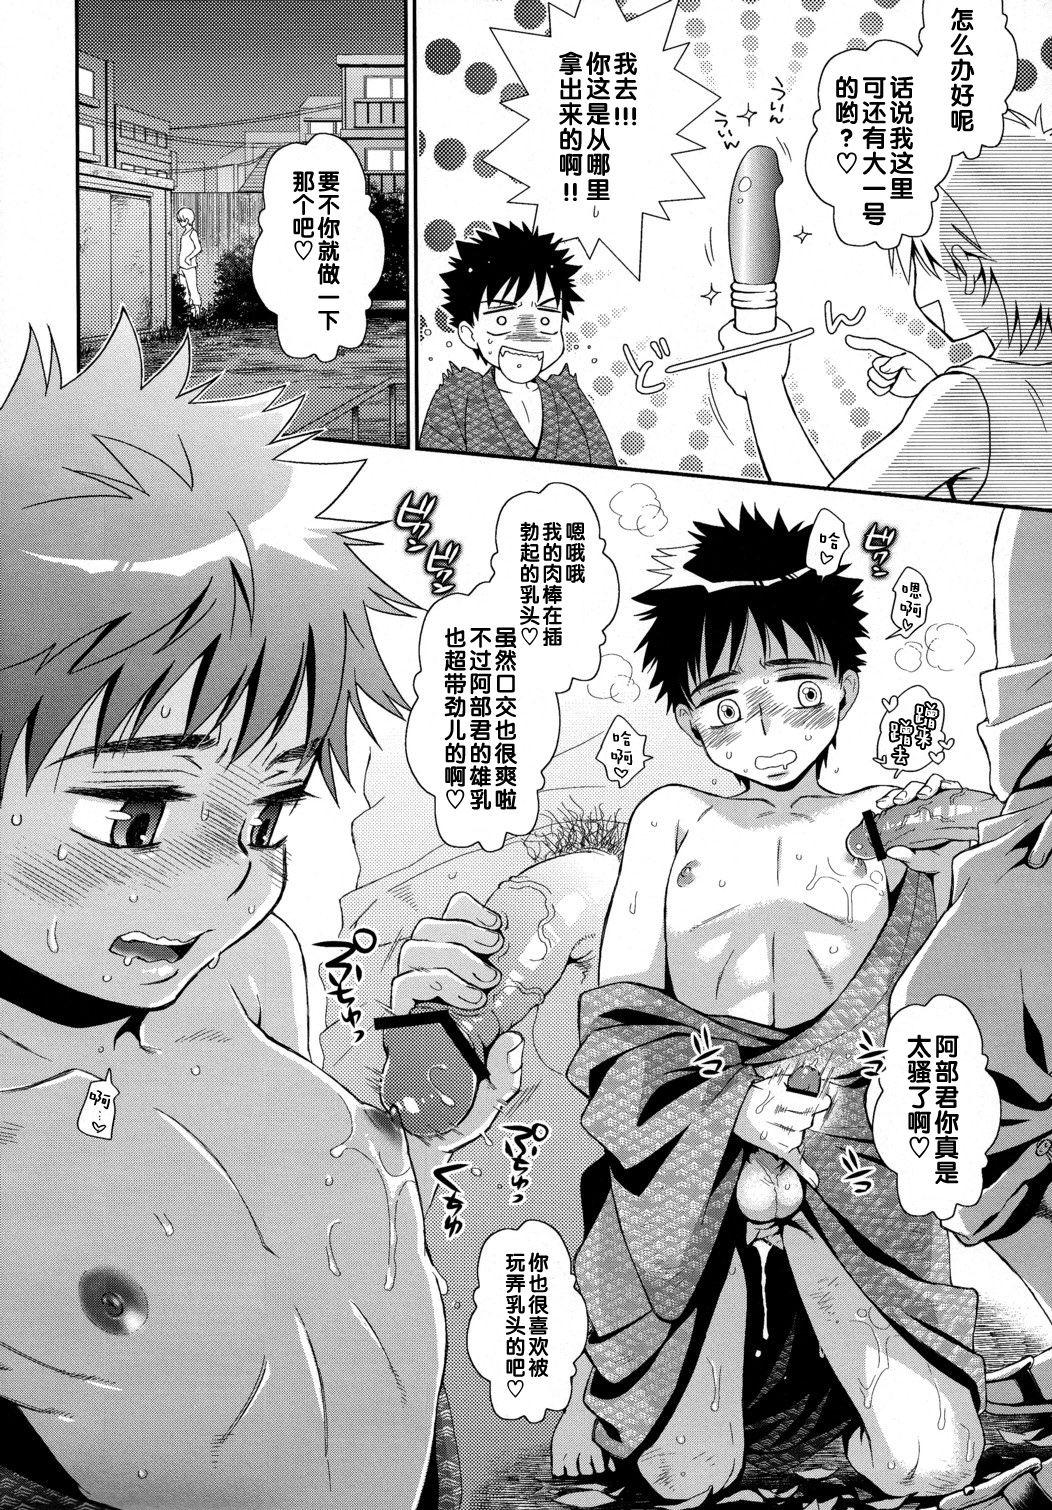 Teenager Super Freak Takuya-kun! 3 - Ookiku furikabutte | big windup Sentones - Page 10